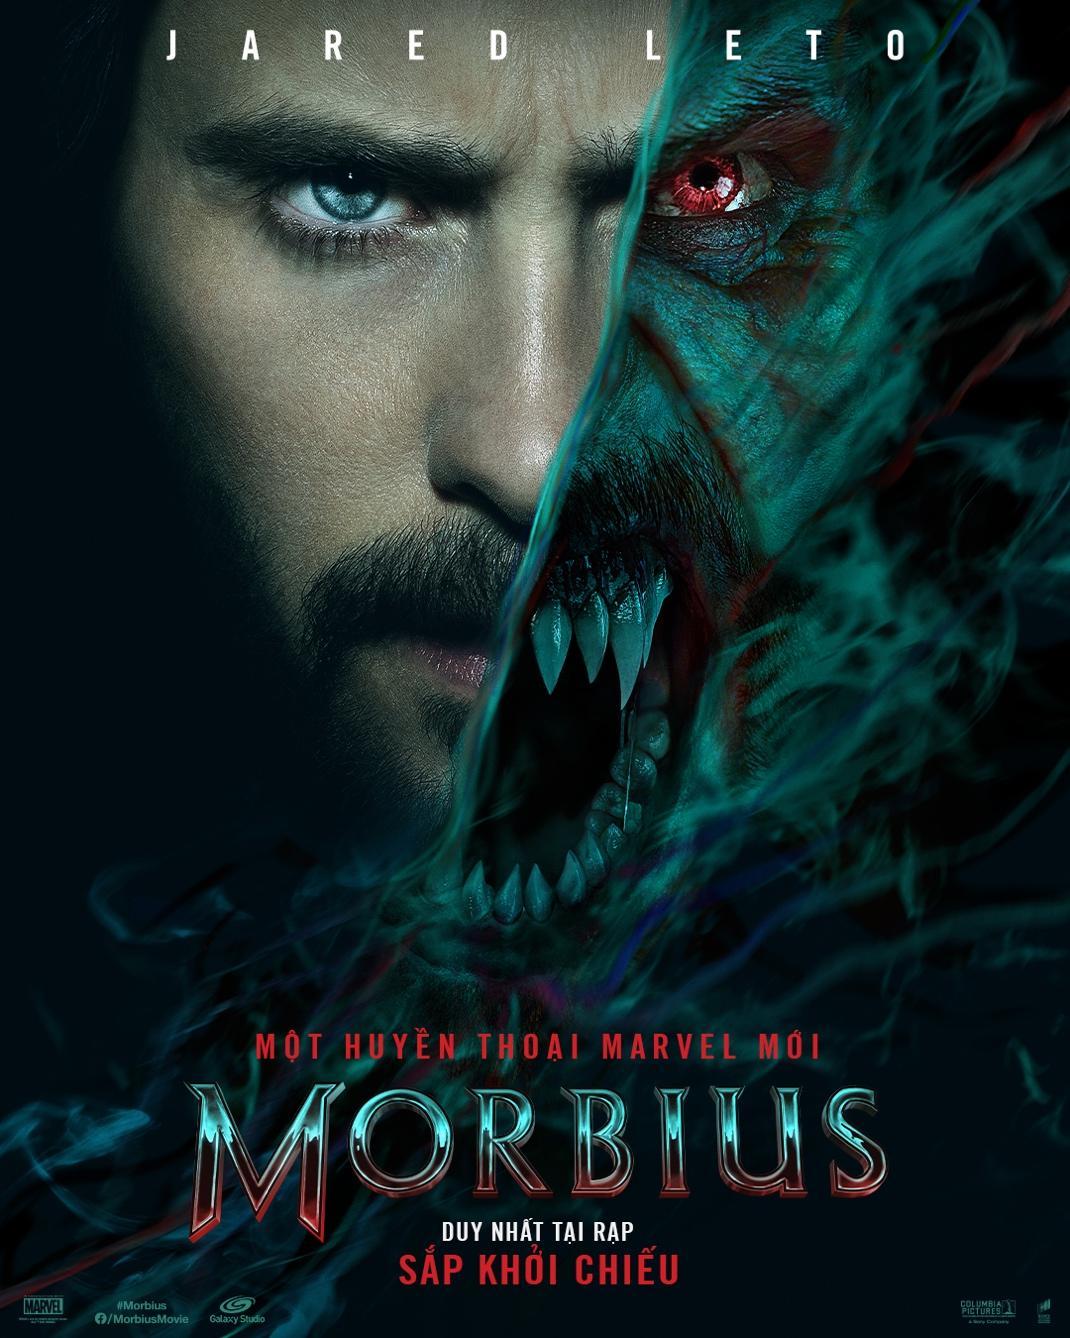 Ma Cà Rồng Morbius – Morbius